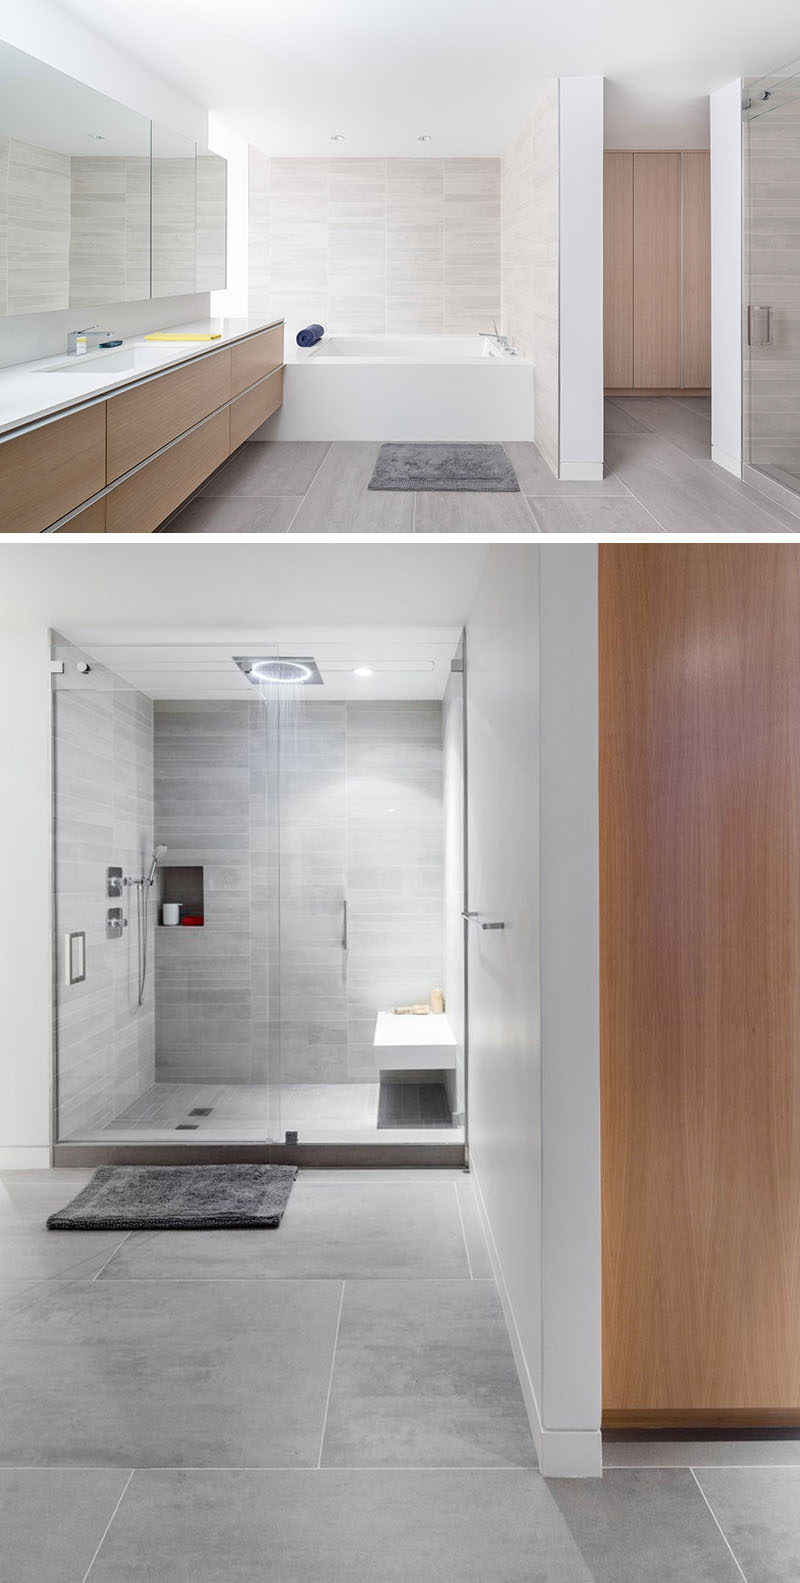 Bathroom Shower Floor Tile Ideas
 Bathroom Tile Idea Use Tiles The Floor And